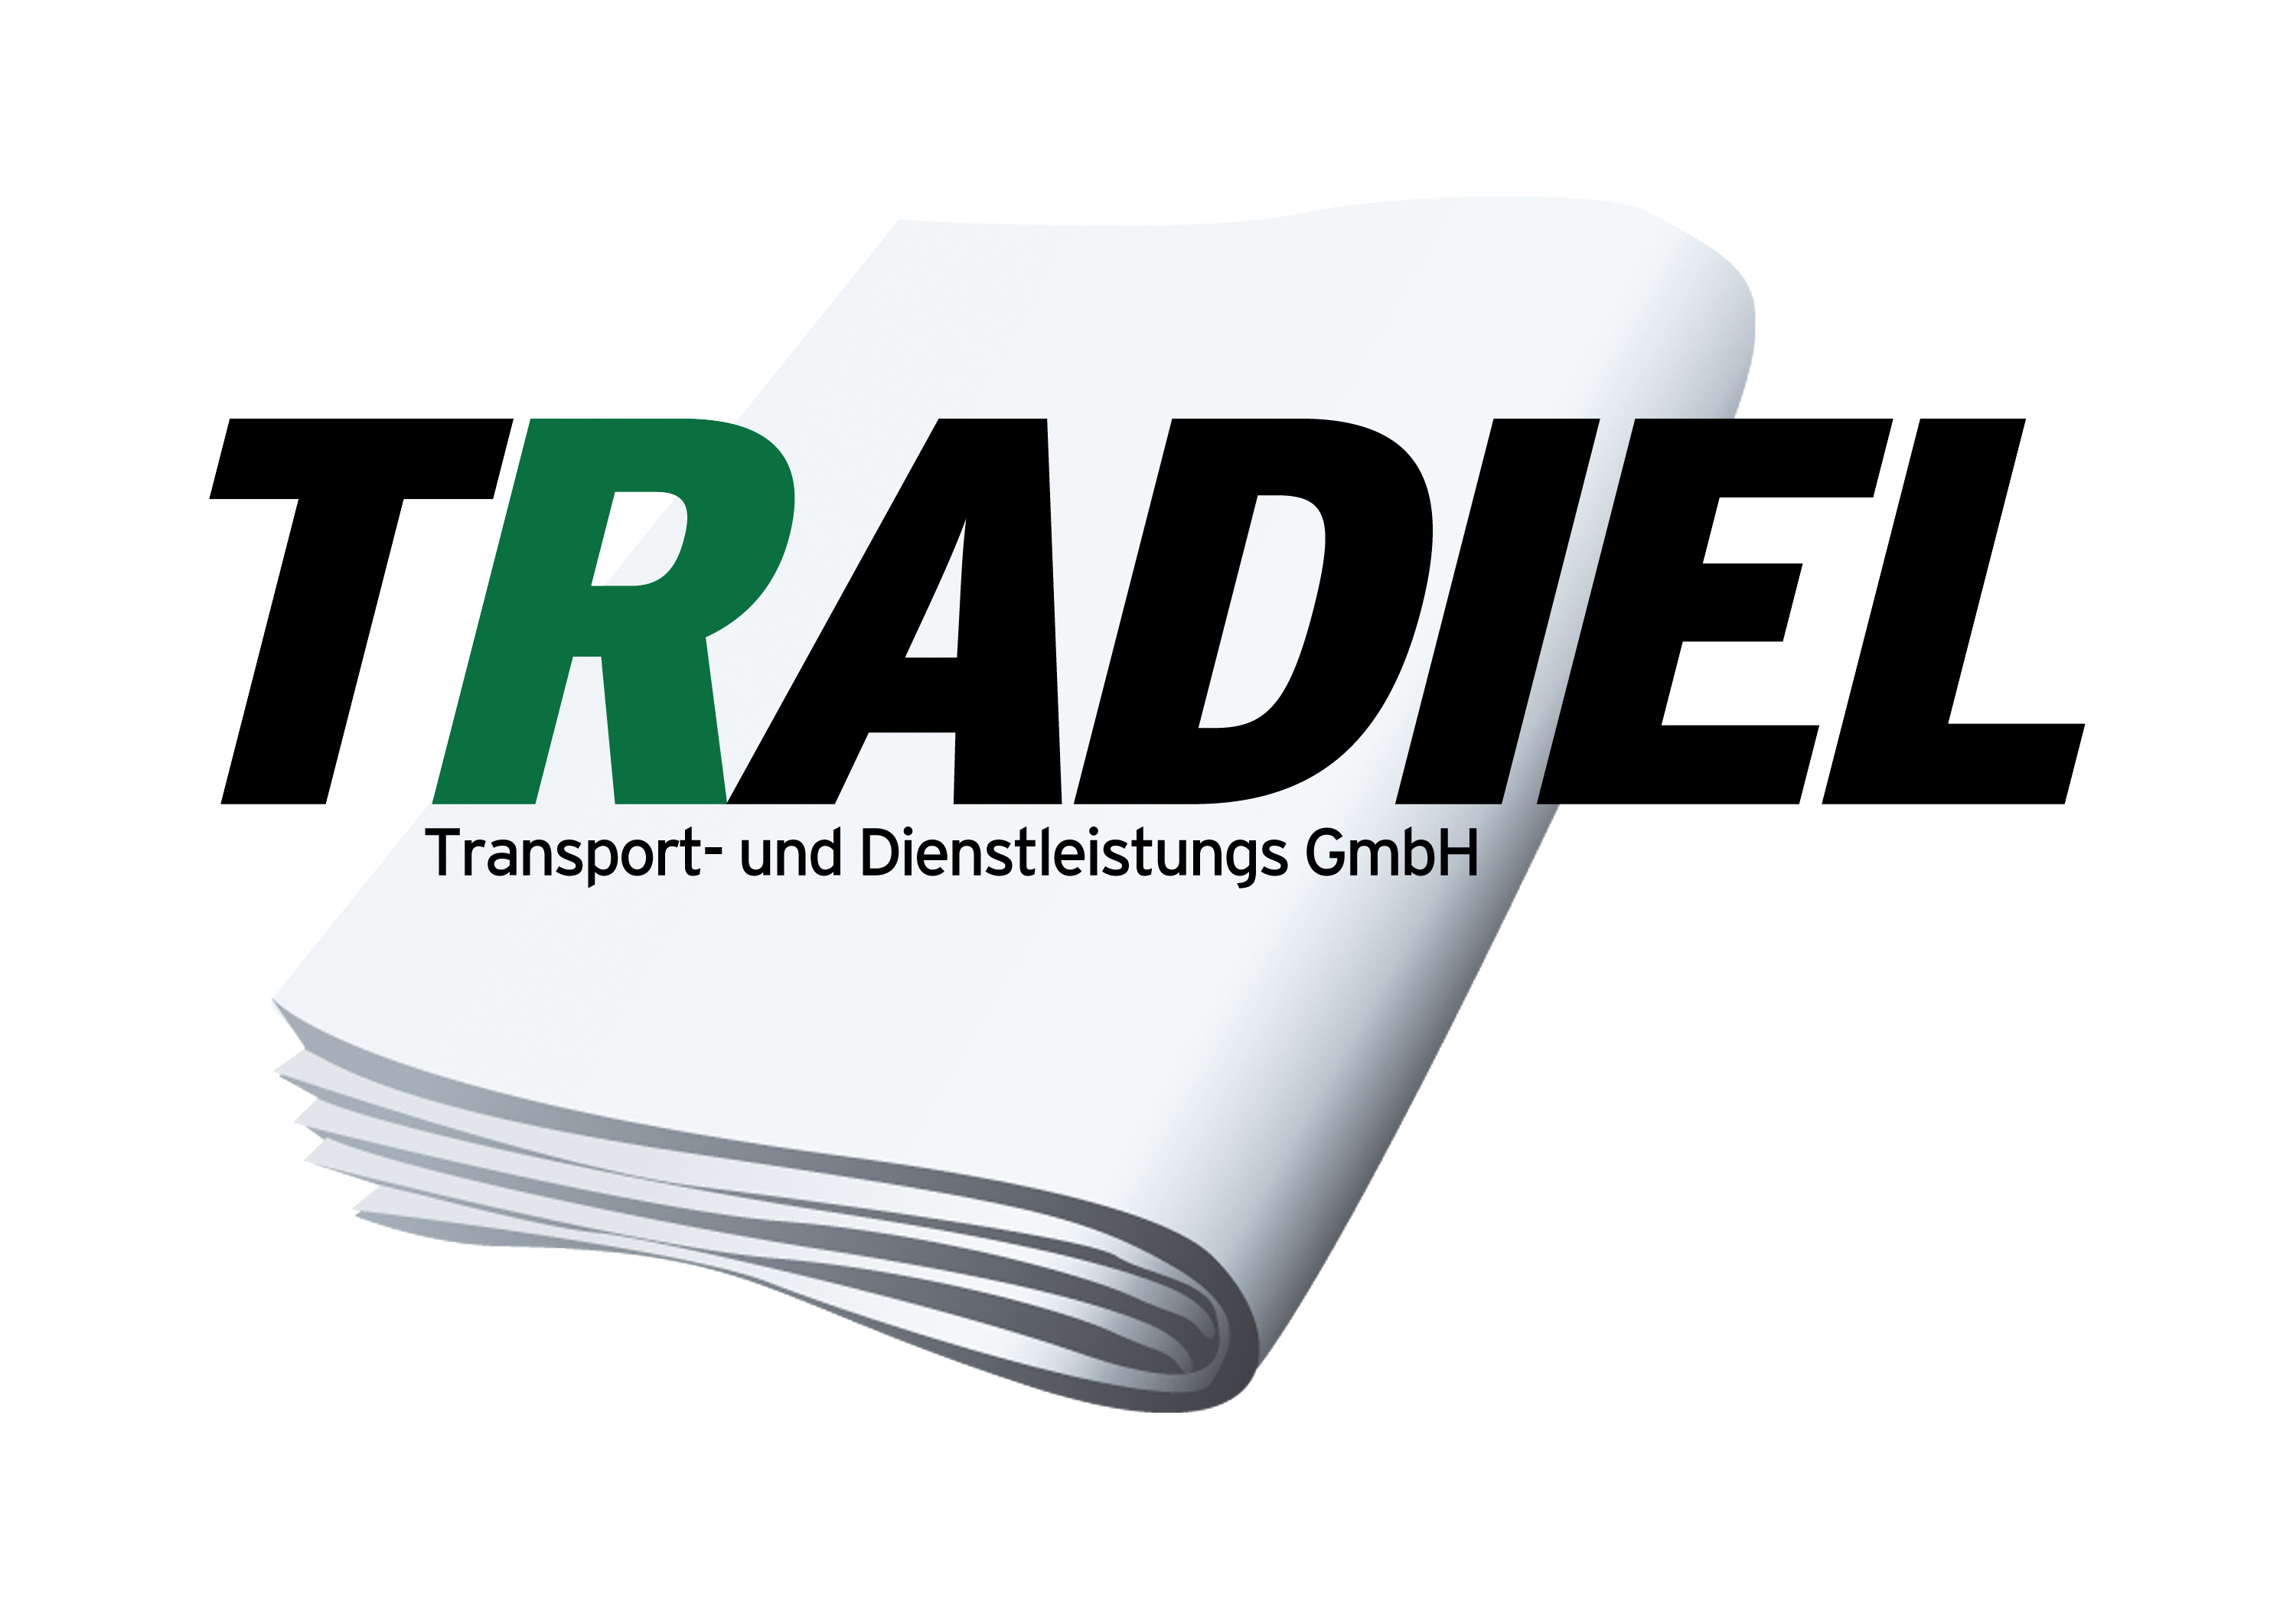 Bild 1 TRADIEL Transport- und Dienstleistungs GmbH in Düsseldorf